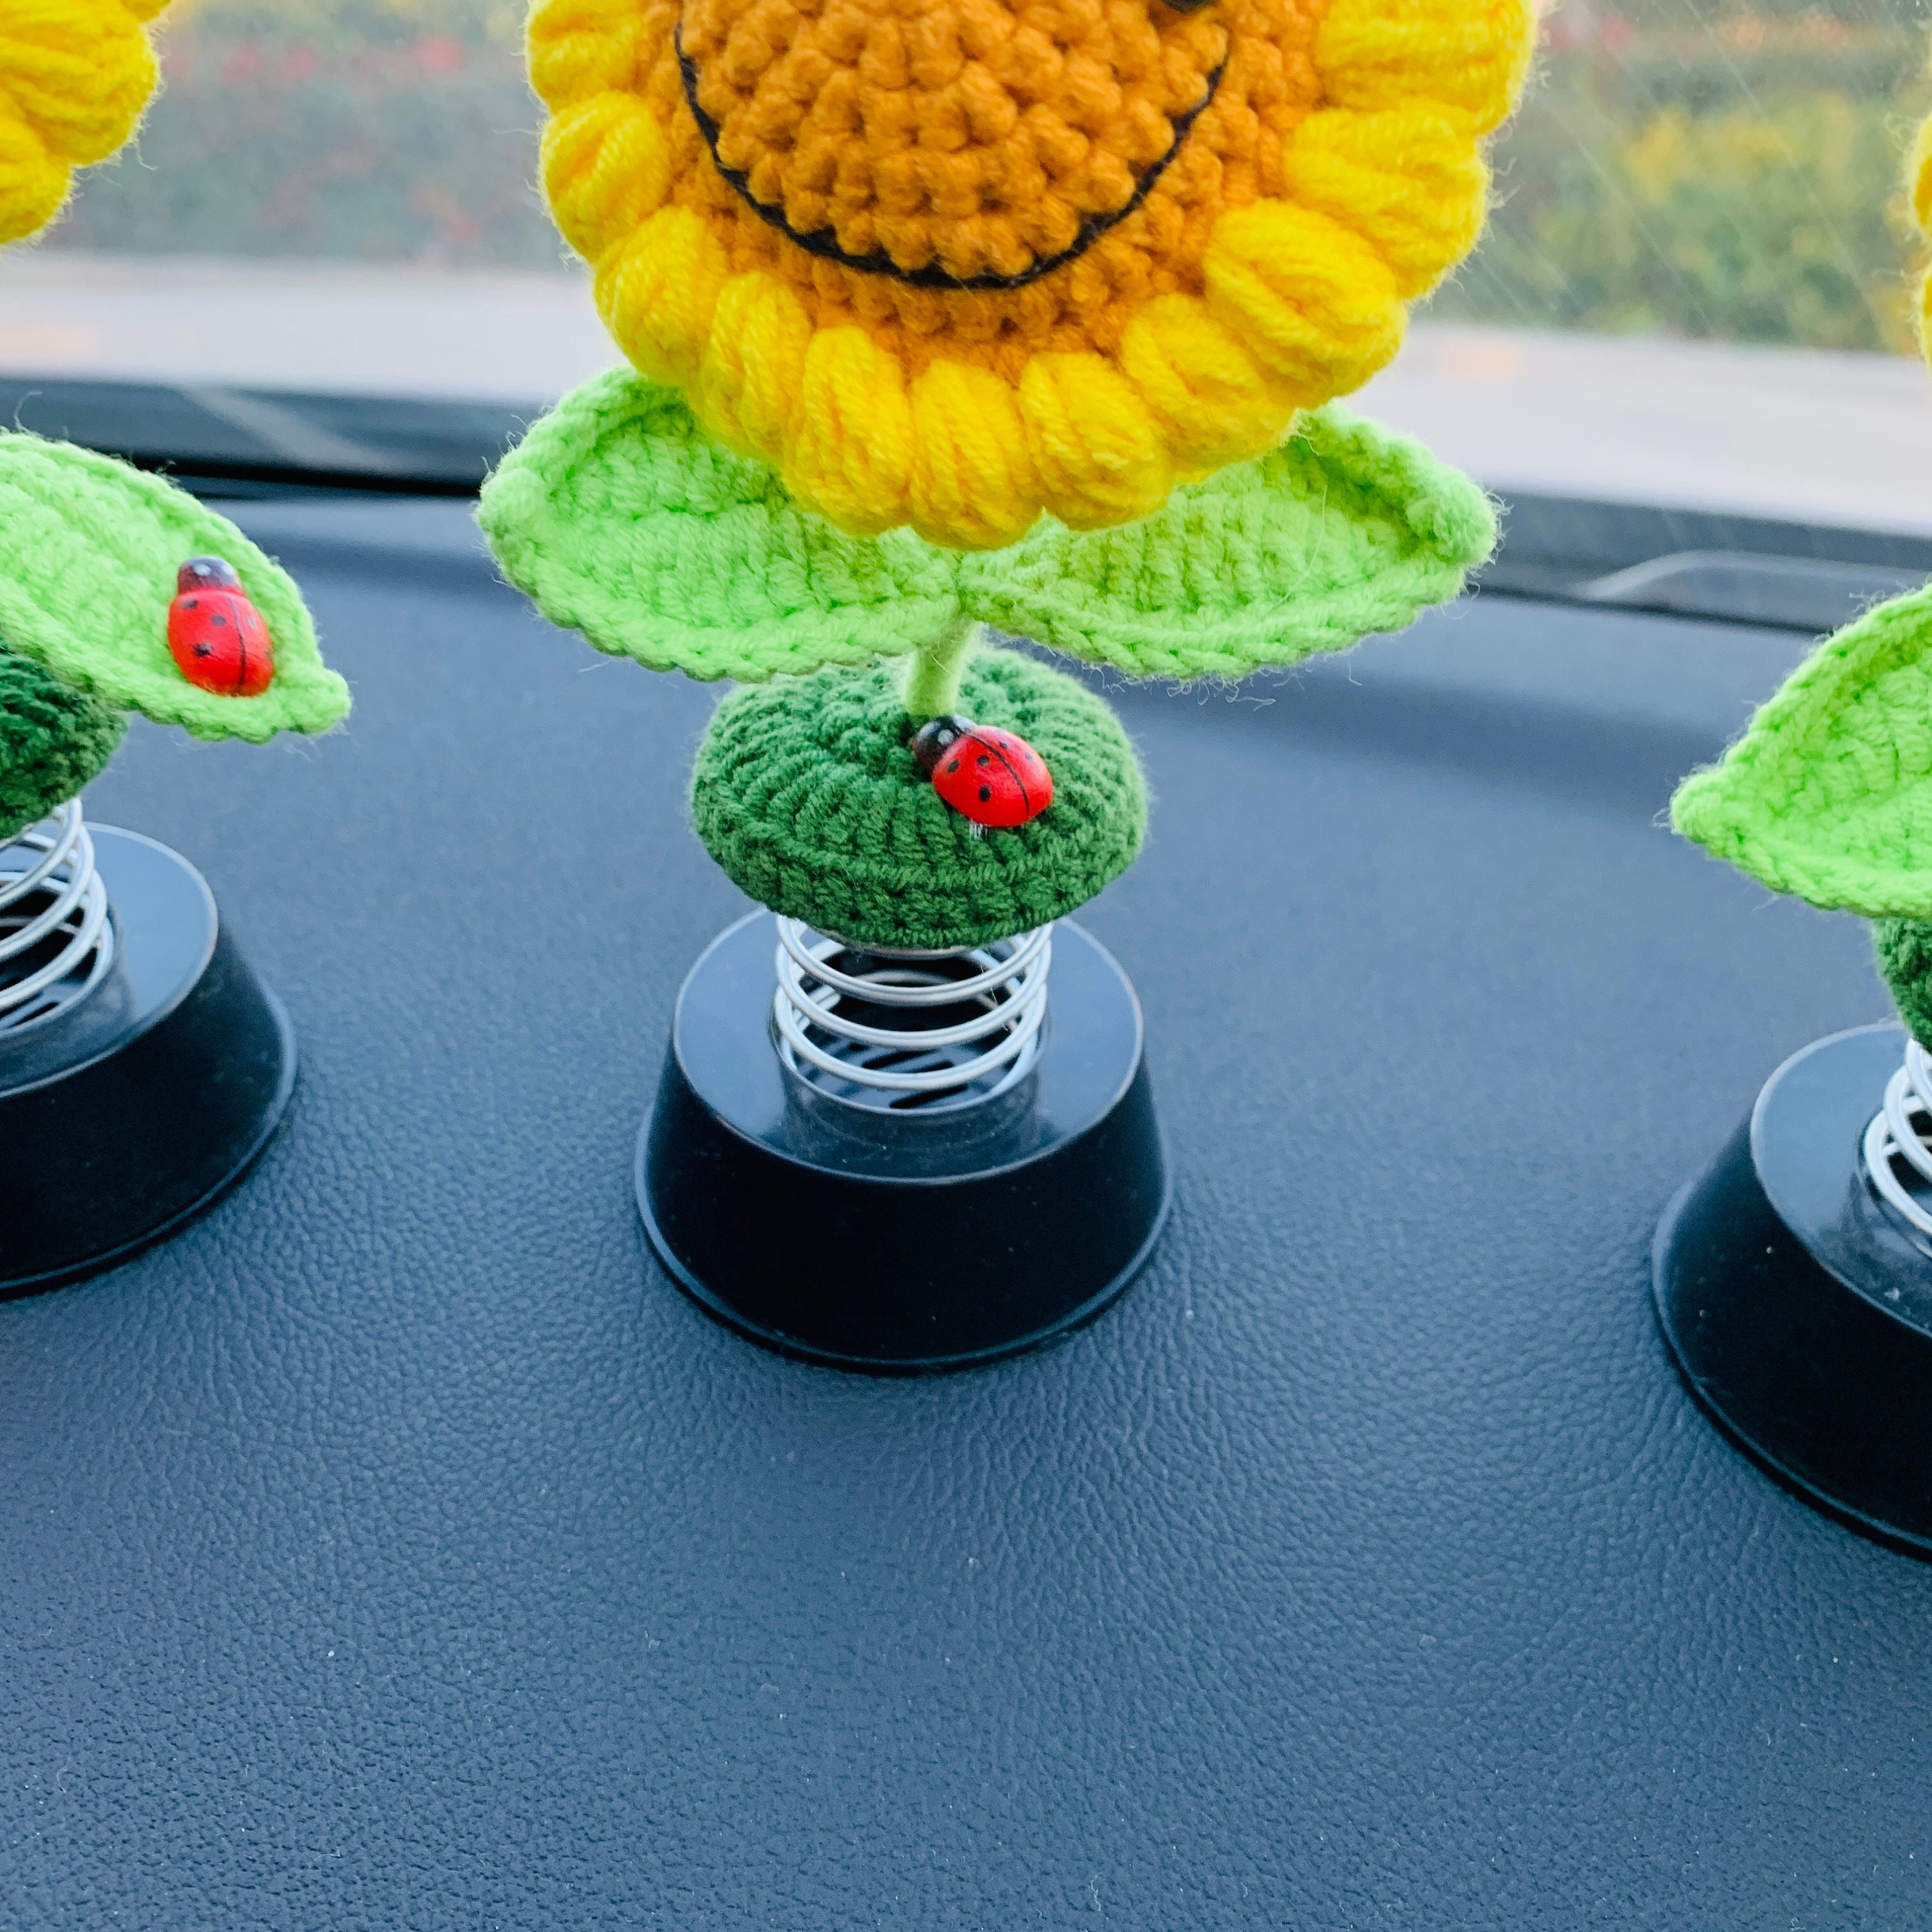 Handgemachte häkeln Sonnenblume Auto Zubehör Smiley süße Blume Schütteln  Kopf Dashboard Dekor für Frauen Wohnkultur Geschenk - .de